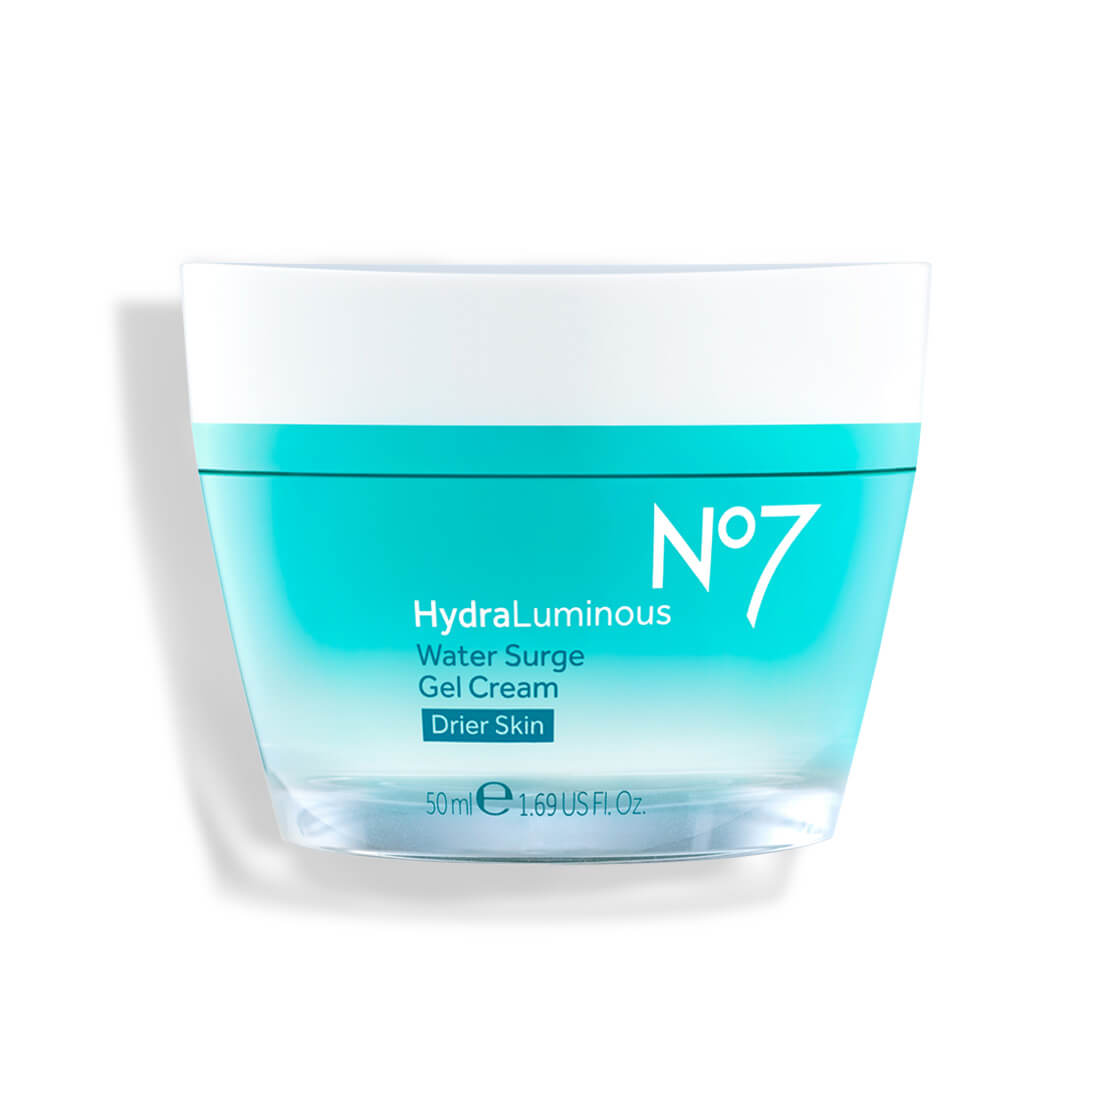 No7 HydraLuminous Water Surge Gel Cream 50ml